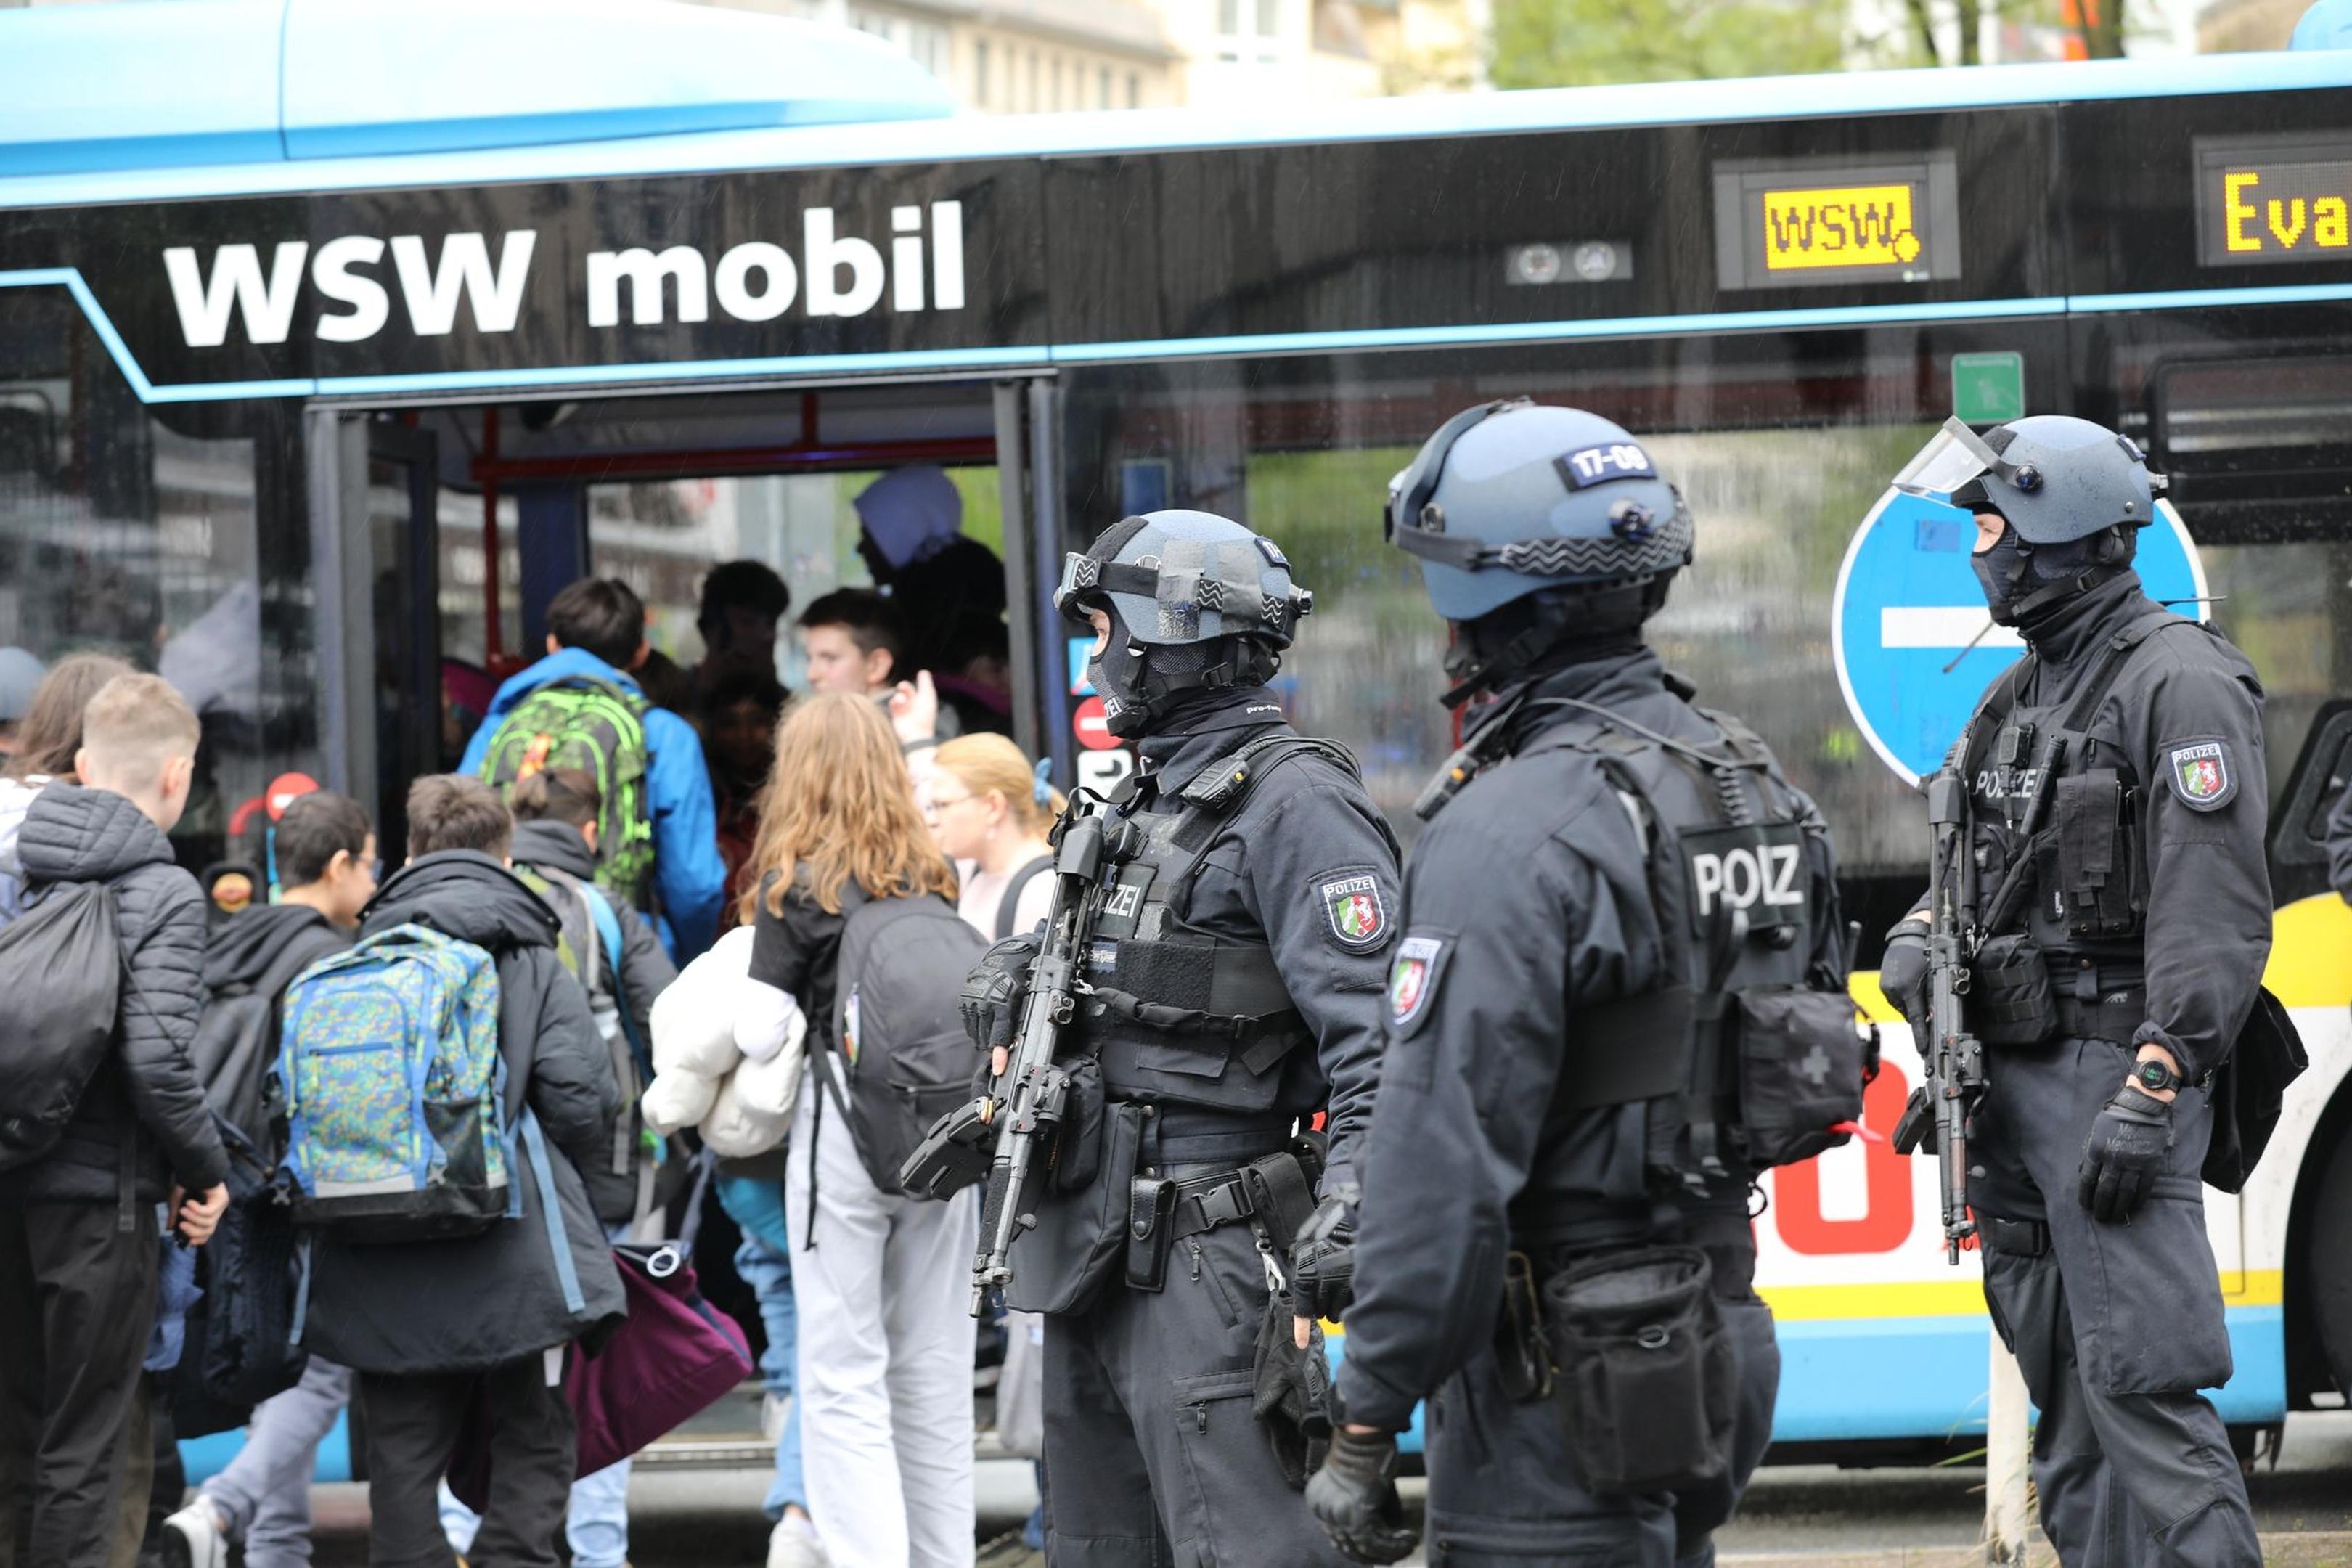 Polizisten führen Schüler aus dem Gebäude in einen Evakuierungsbus.